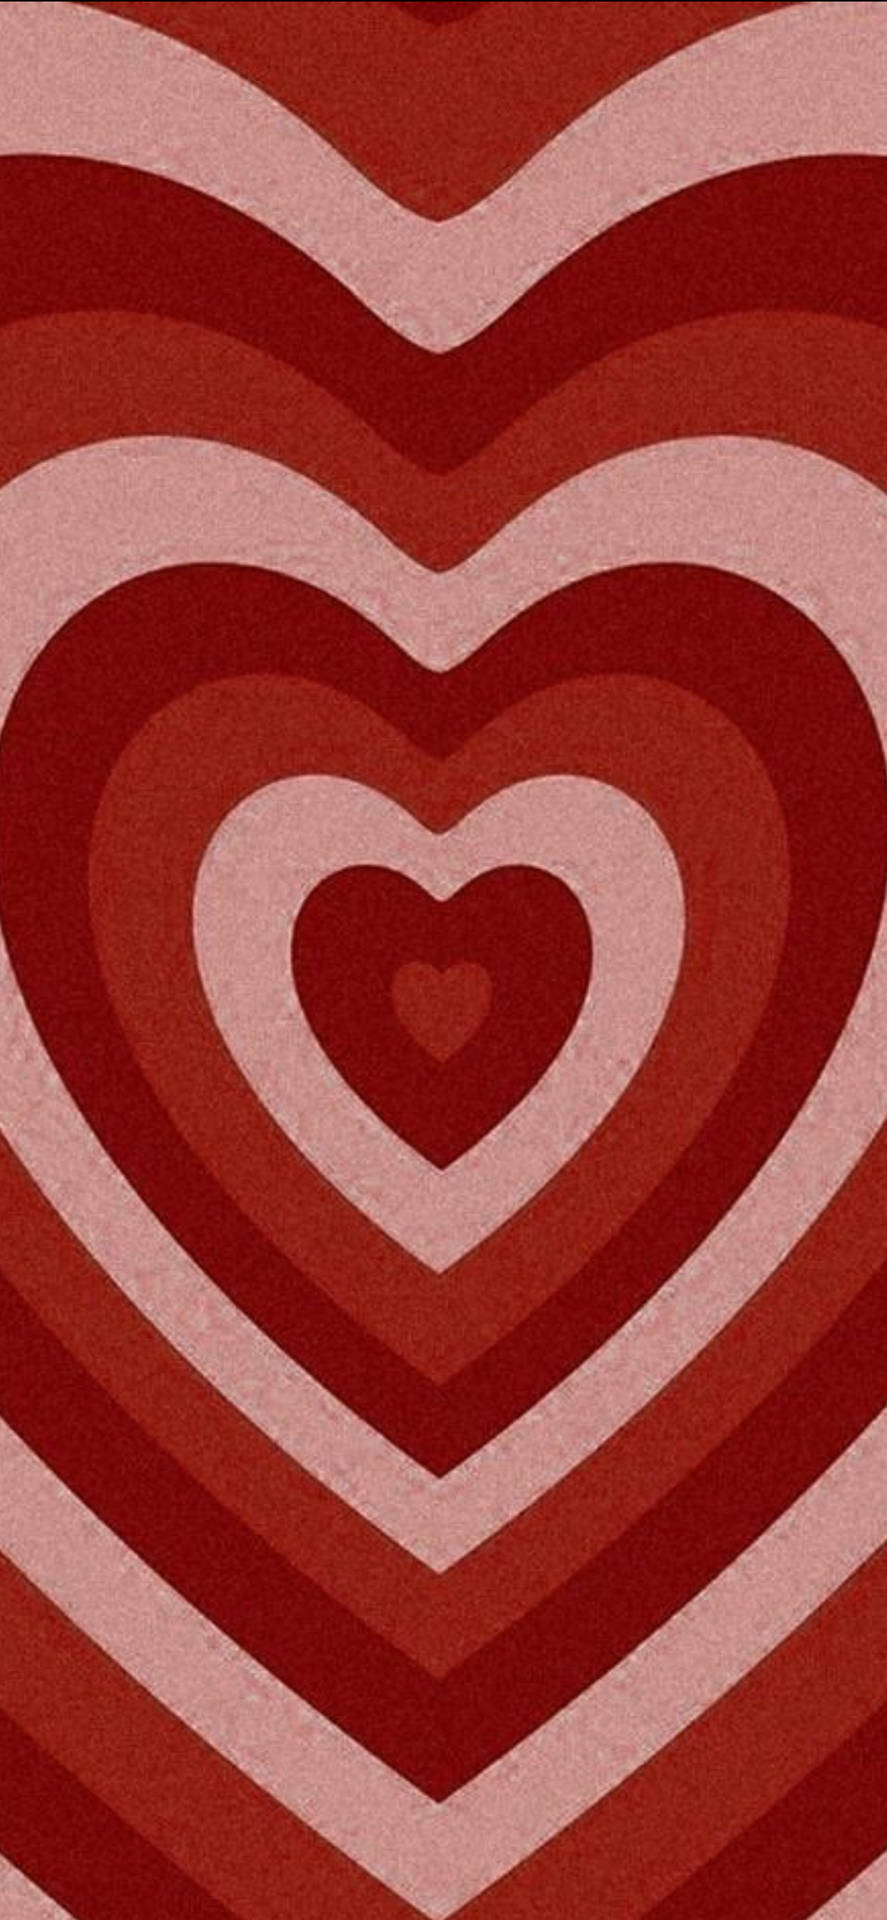 Vis kærlighed denne Valentins Dag med hjerter, blomster og kreativitet! Wallpaper